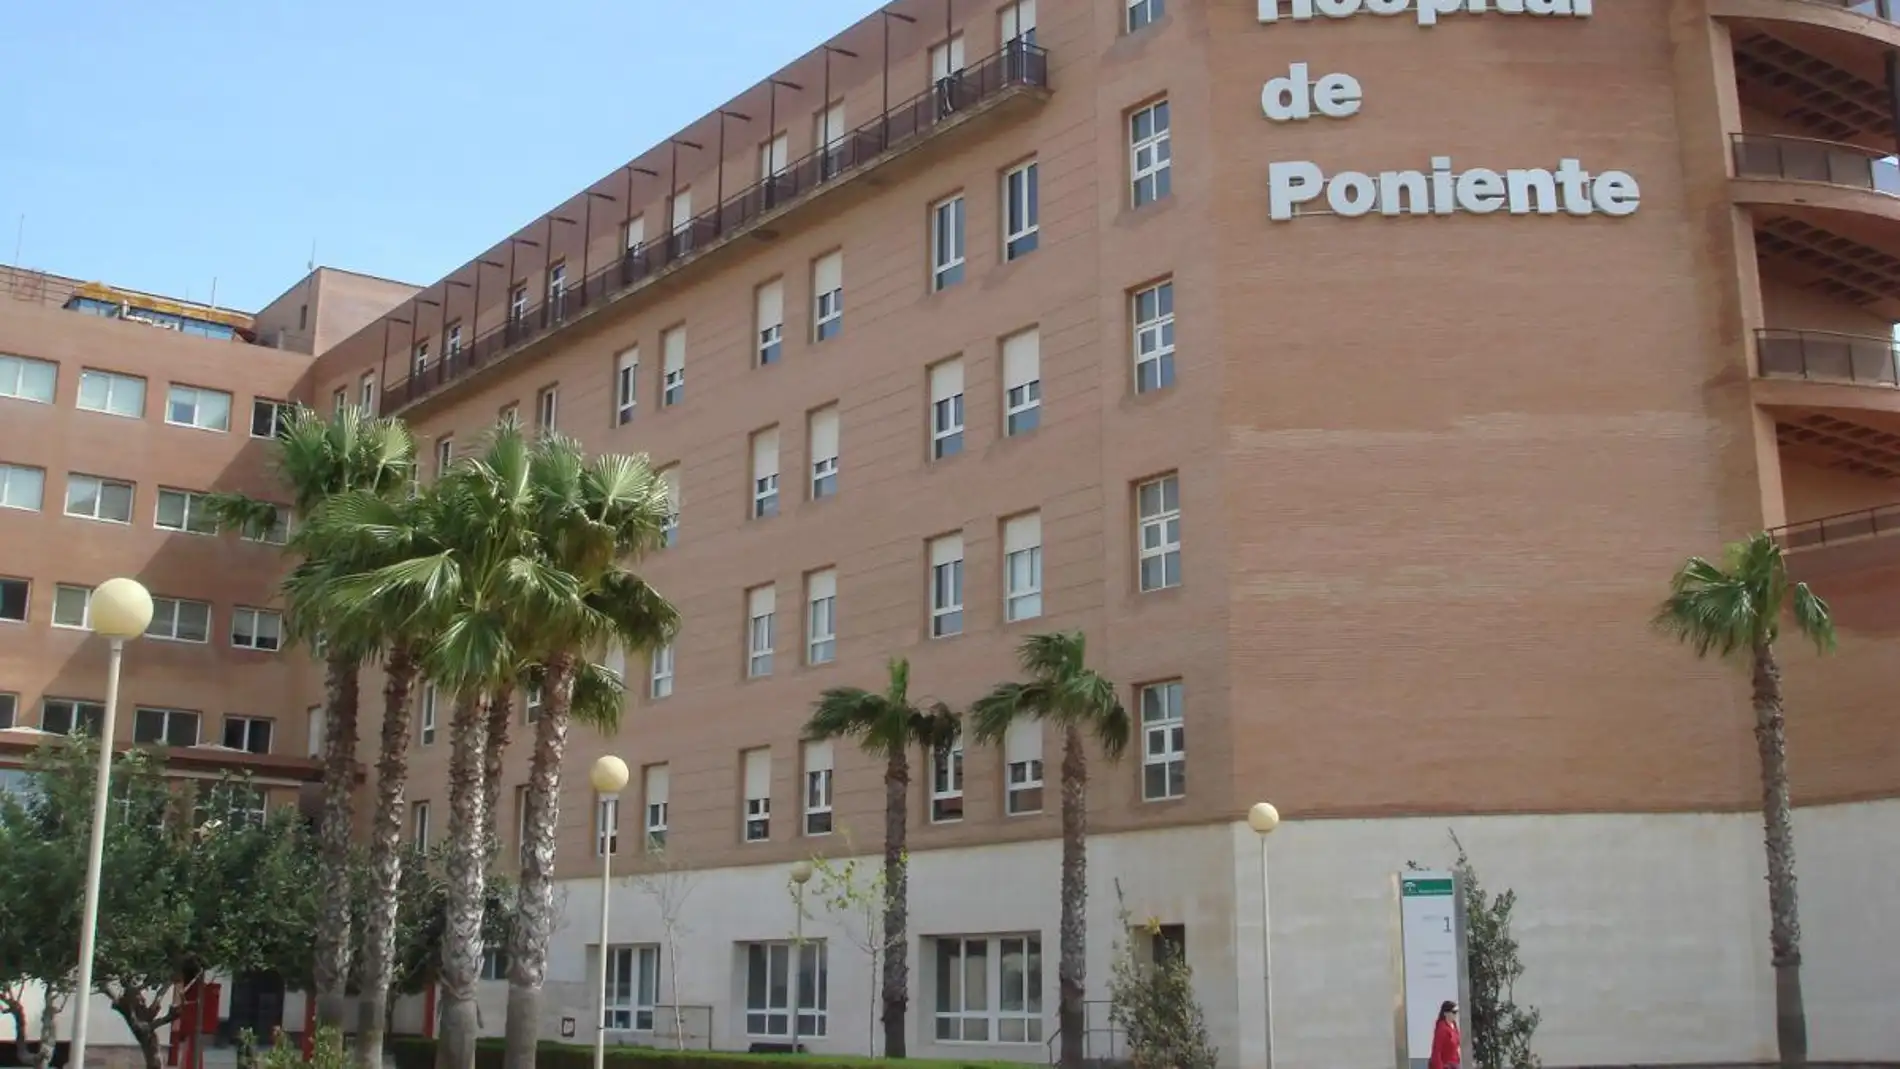 Imagen de archivo del Hospital de Poniente